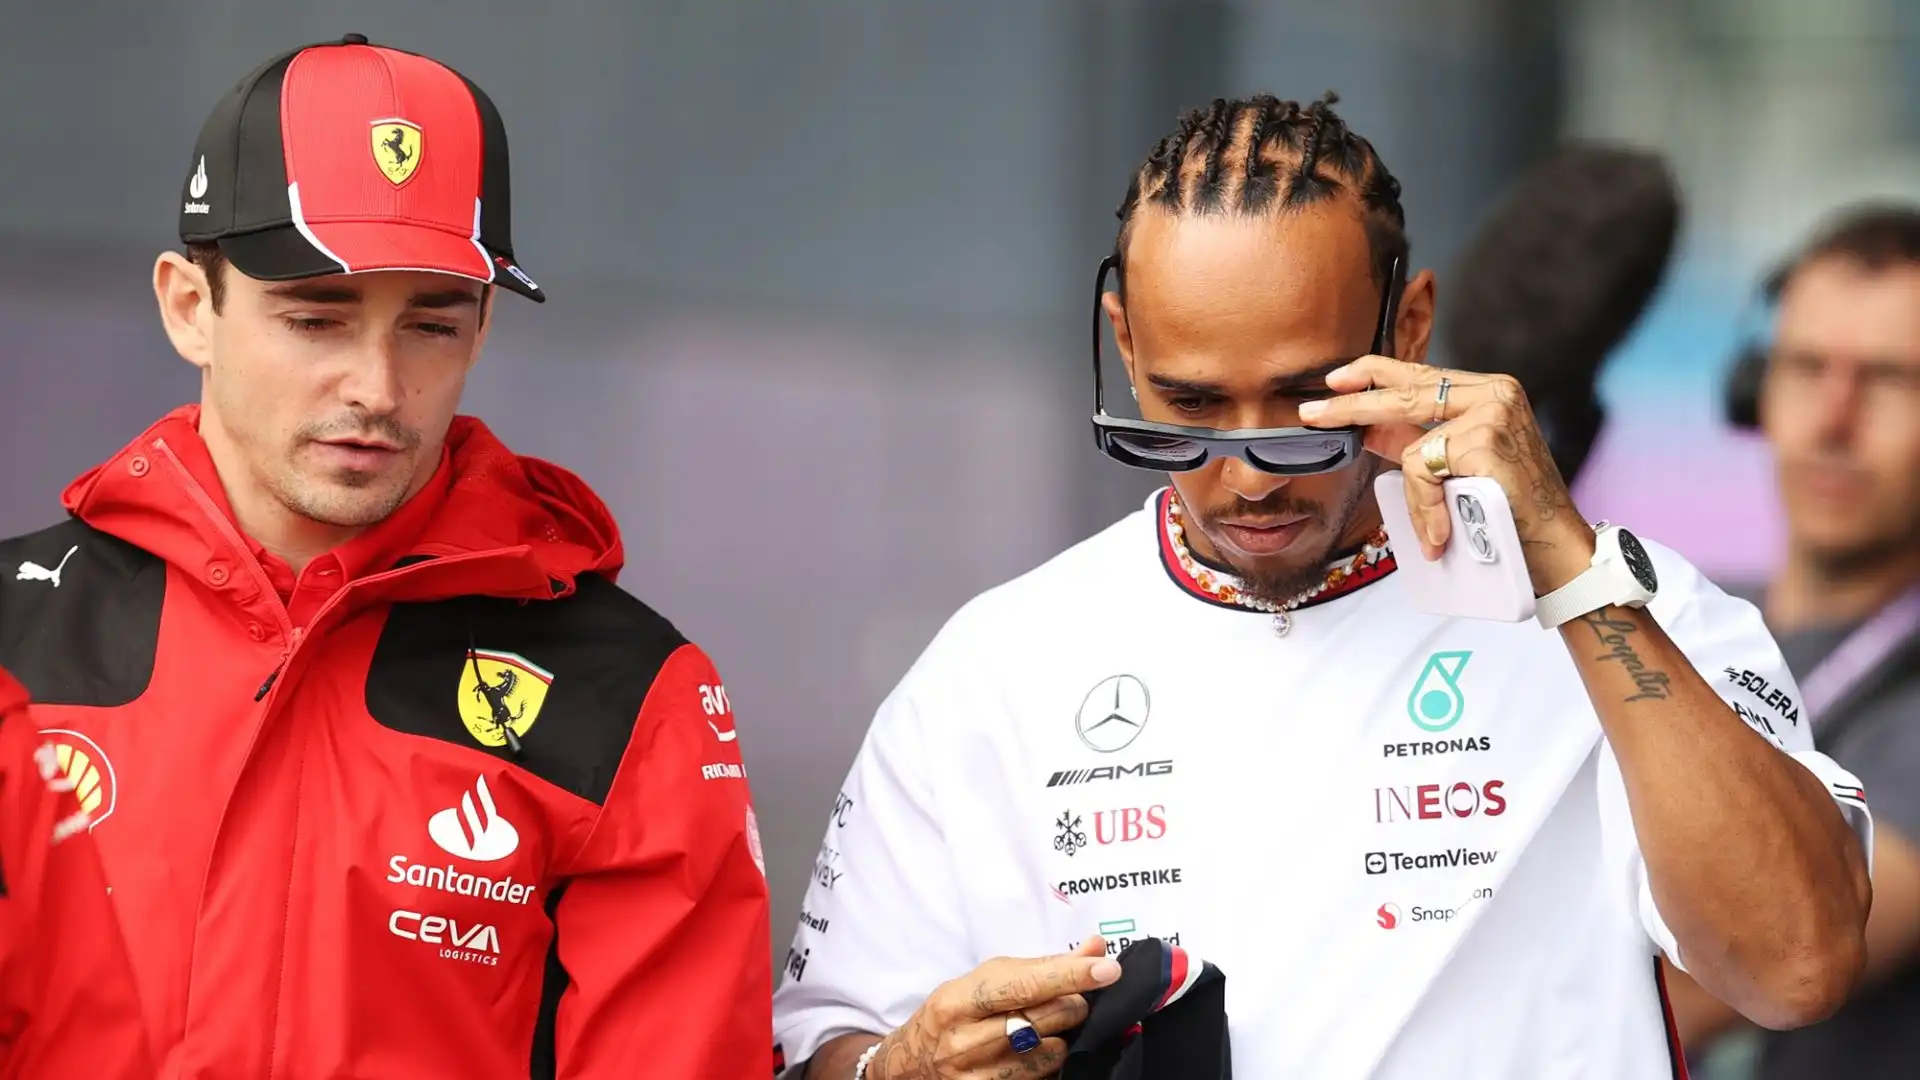 L'arrivo di Lewis Hamilton, chiaramente, cambia tutto